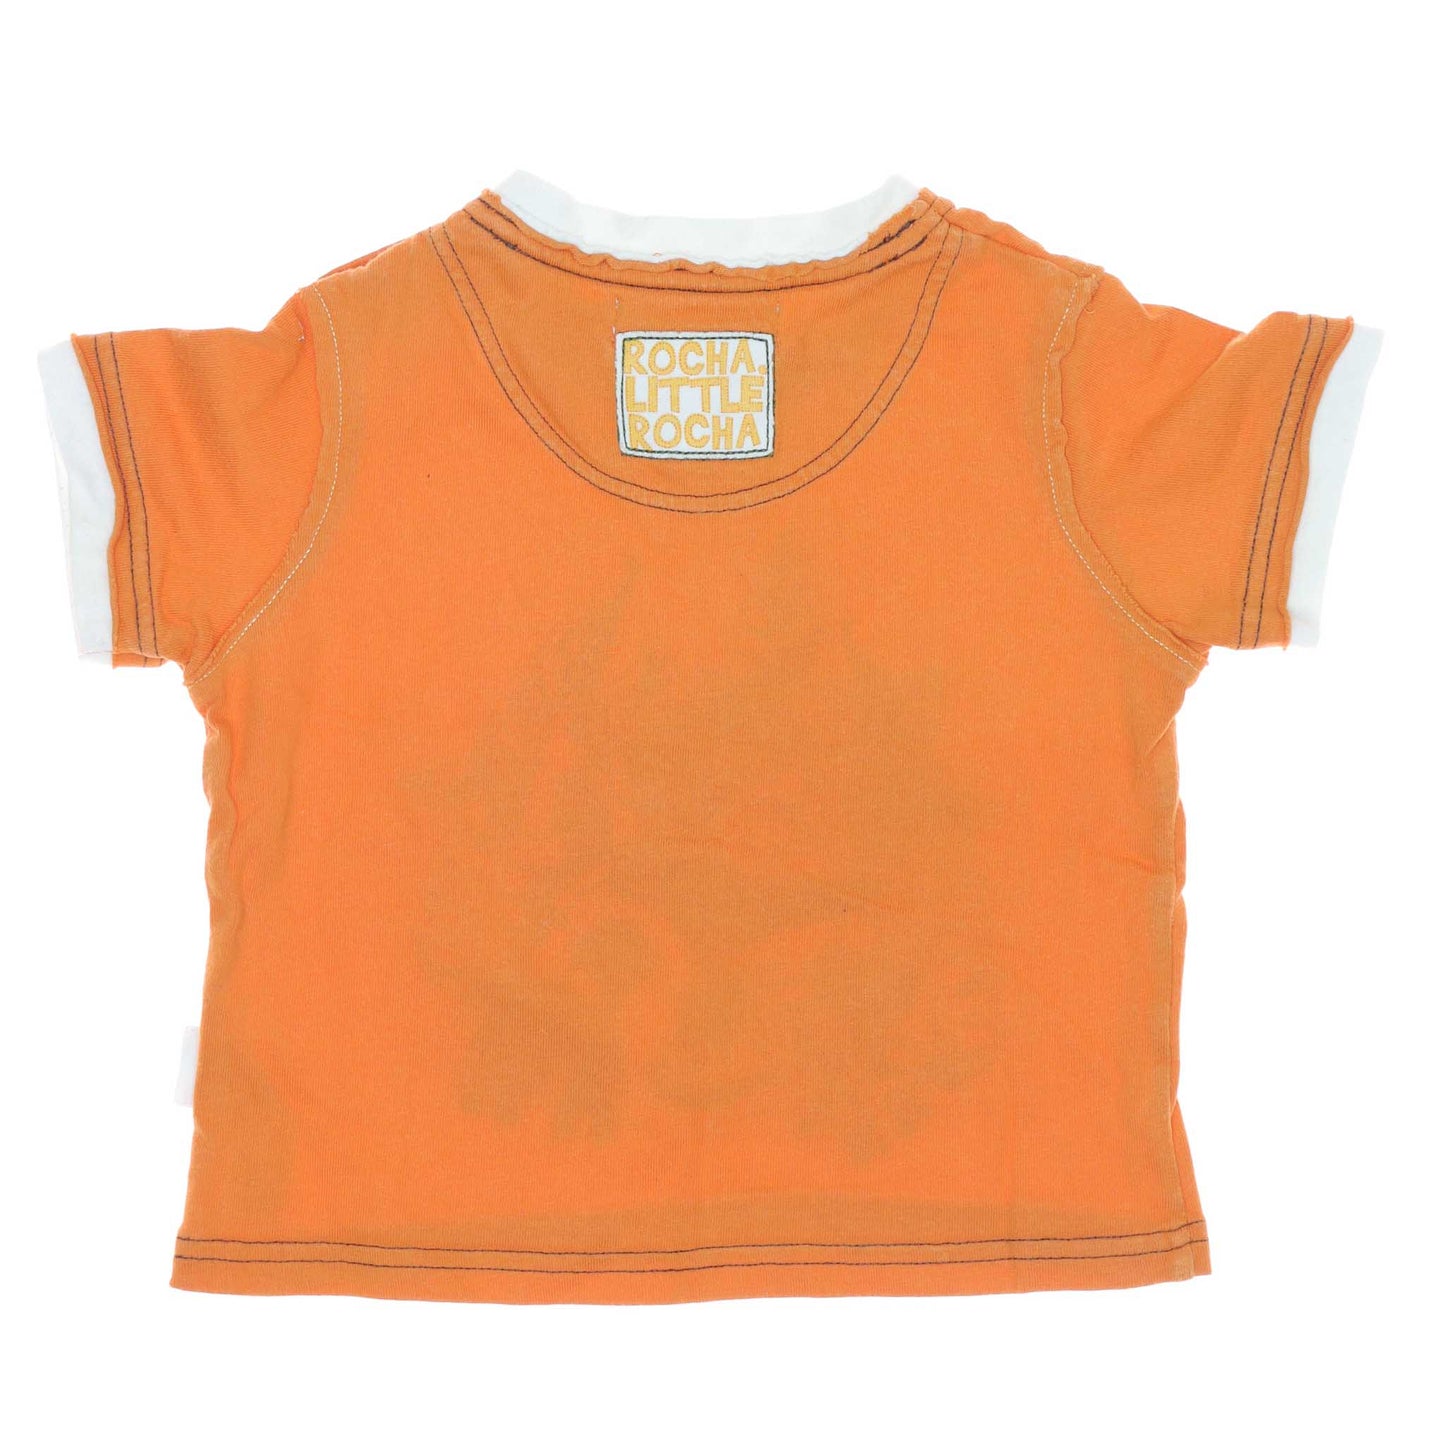 Μπλούζα Rocha Little Rocha (9 μηνών - 12 μηνών)